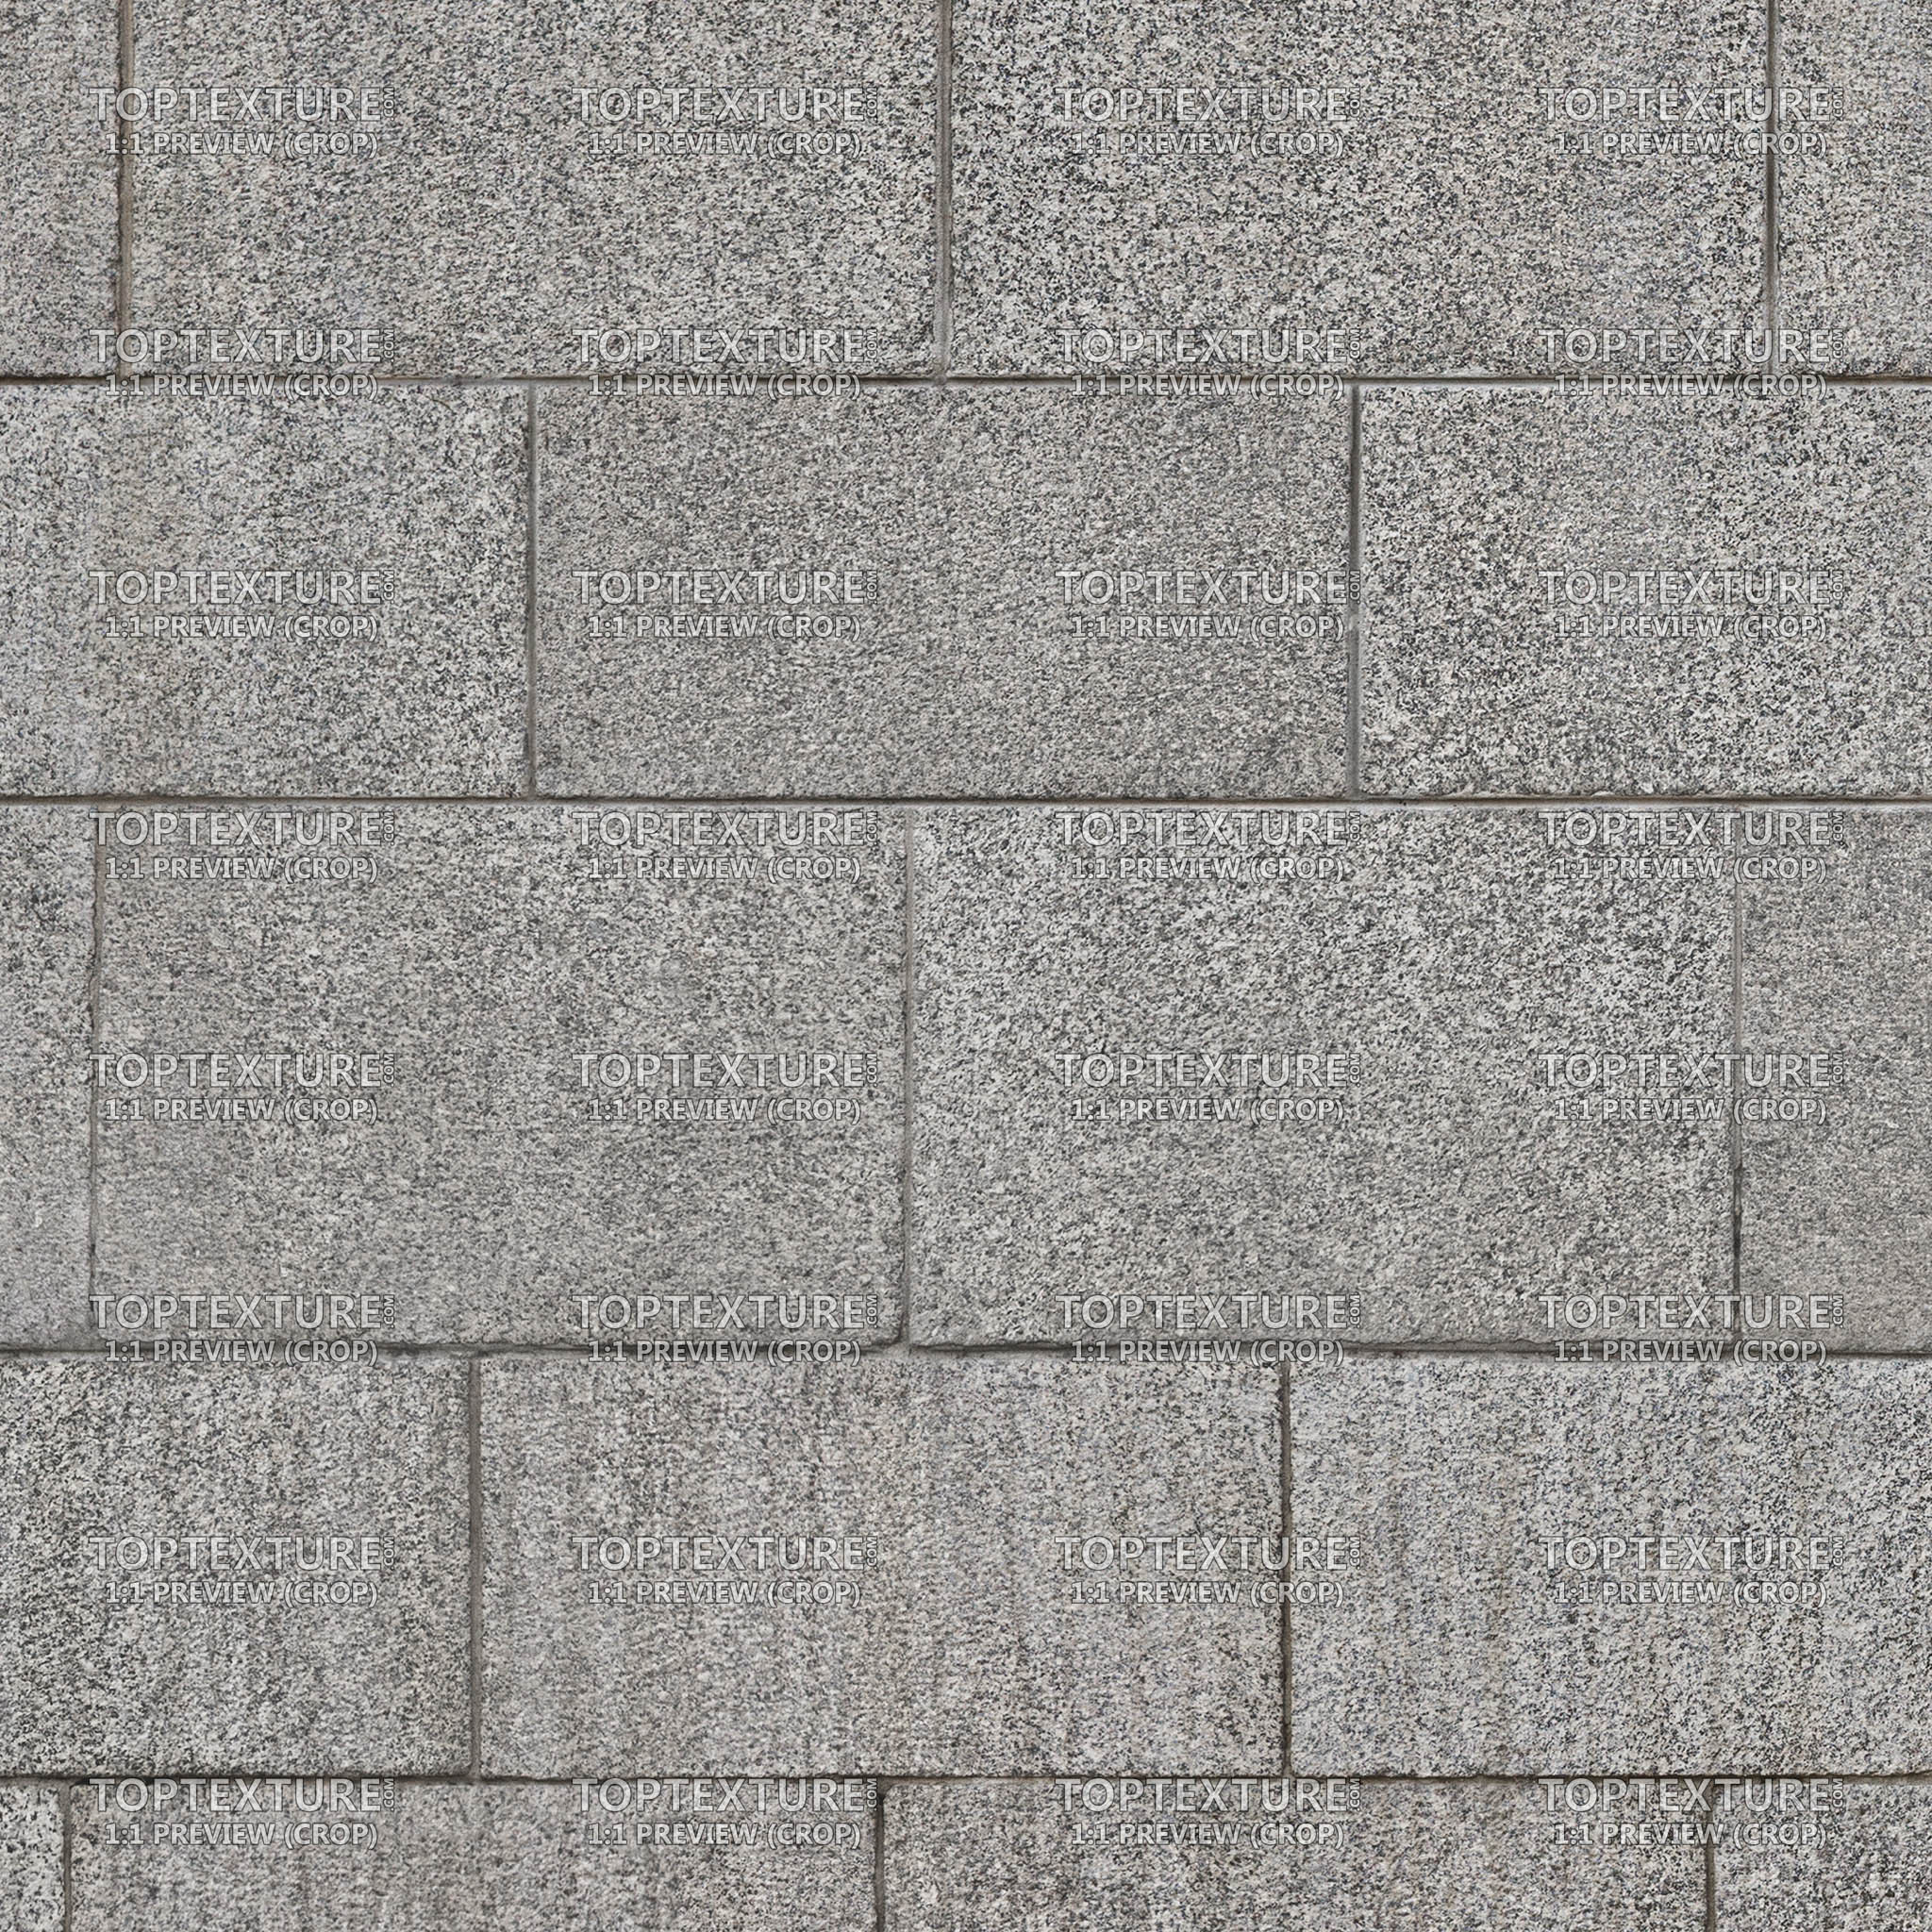 Gray Rectangular Stone Tiles - Top Texture